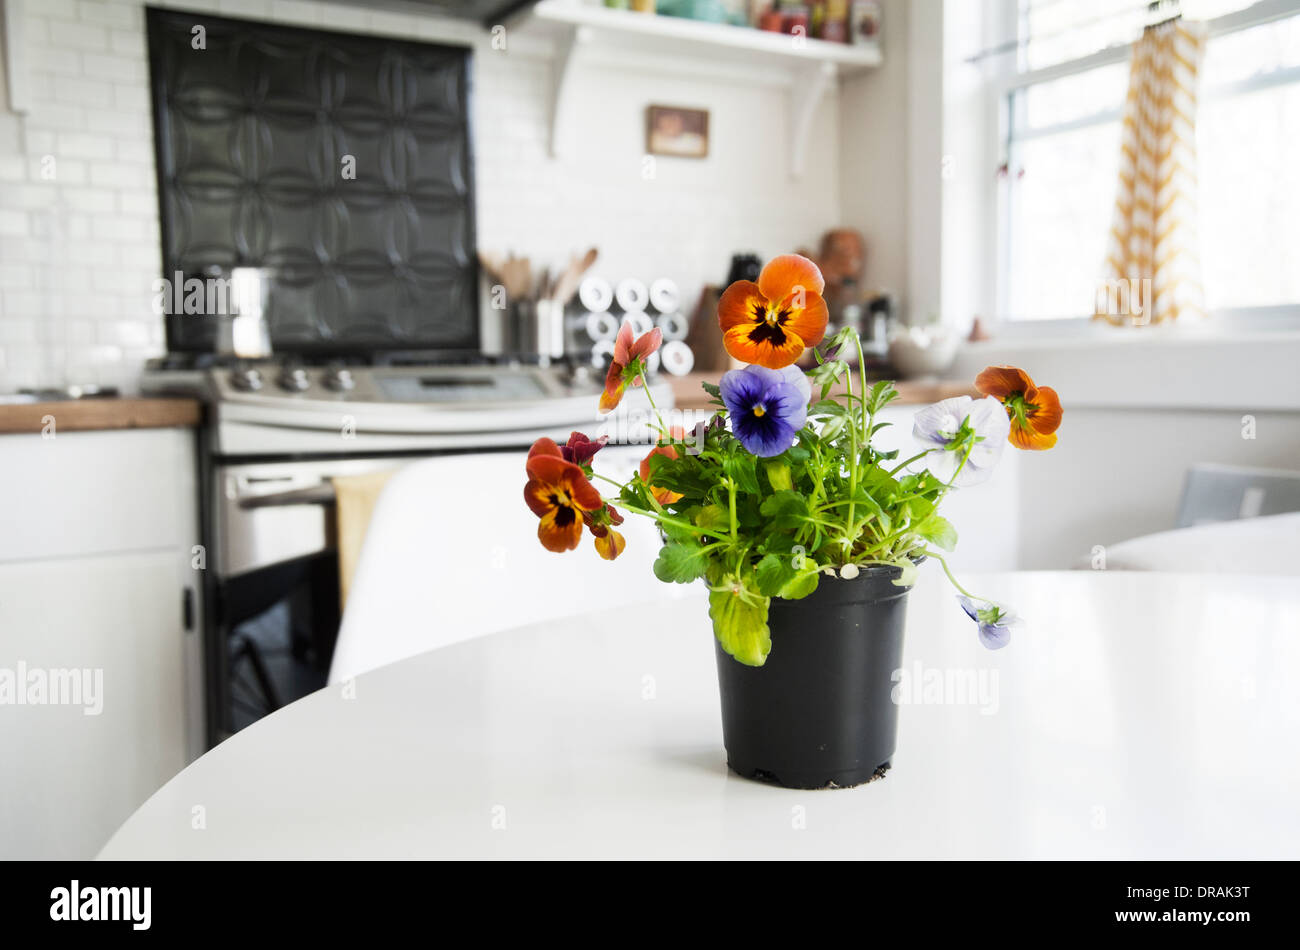 Vase de altos sur une table dans une cuisine de style campagnard Banque D'Images